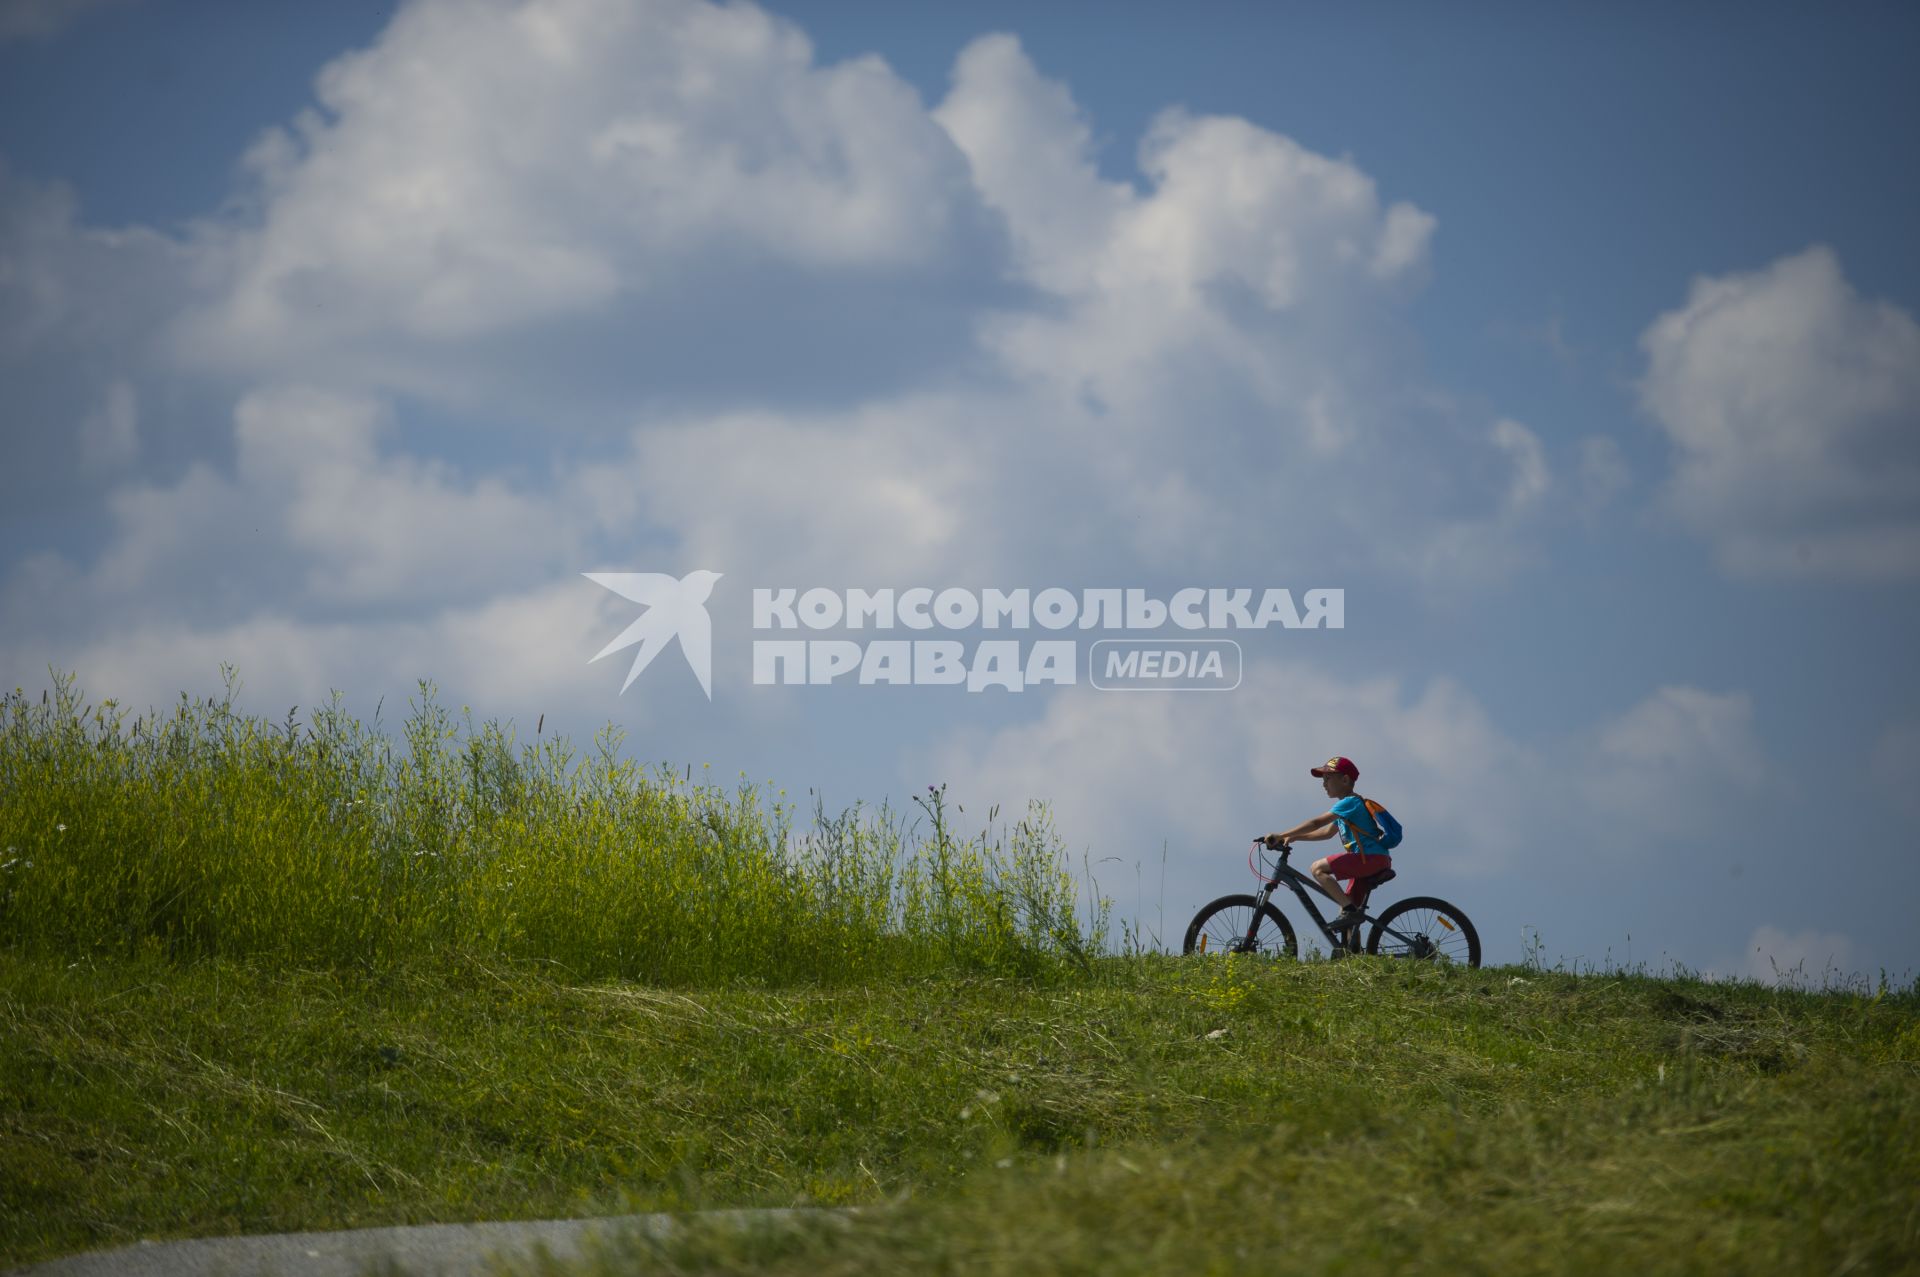 Екатеринбург. Ребенок катается на велосипеде в поле